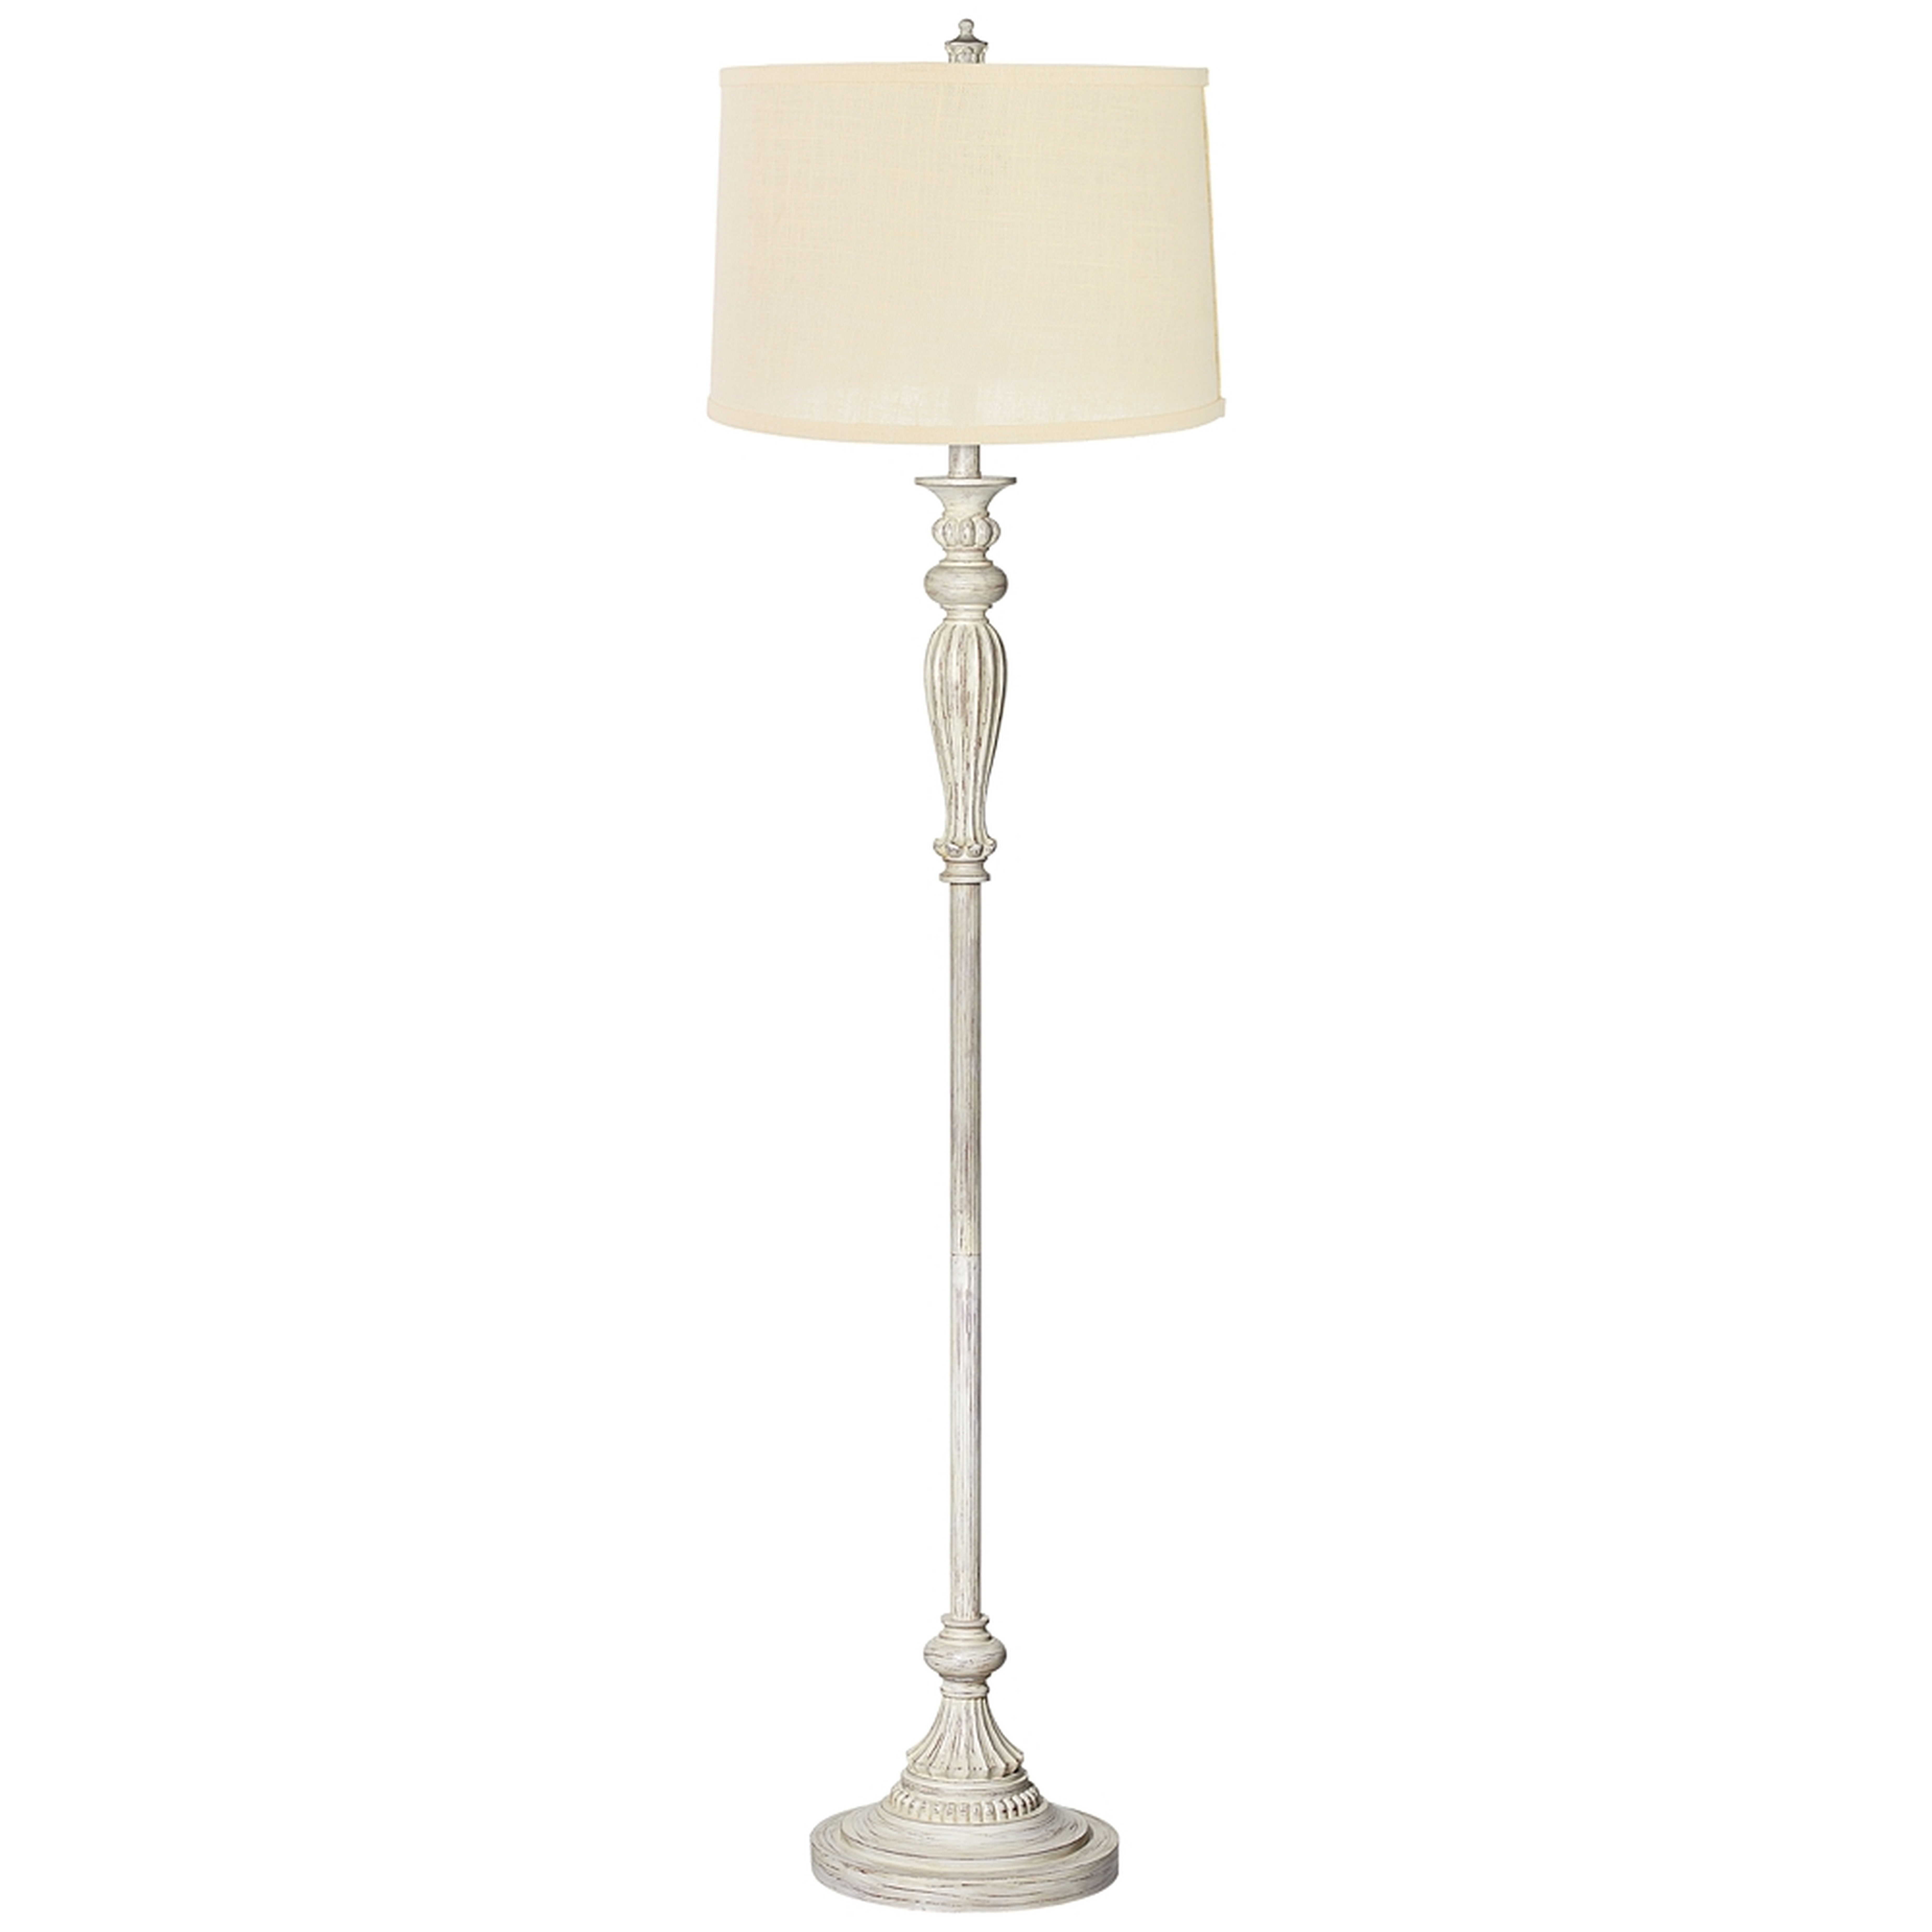 Cream Burlap Shade Vintage Chic Antique White Floor Lamp - Style # 17K18 - Lamps Plus